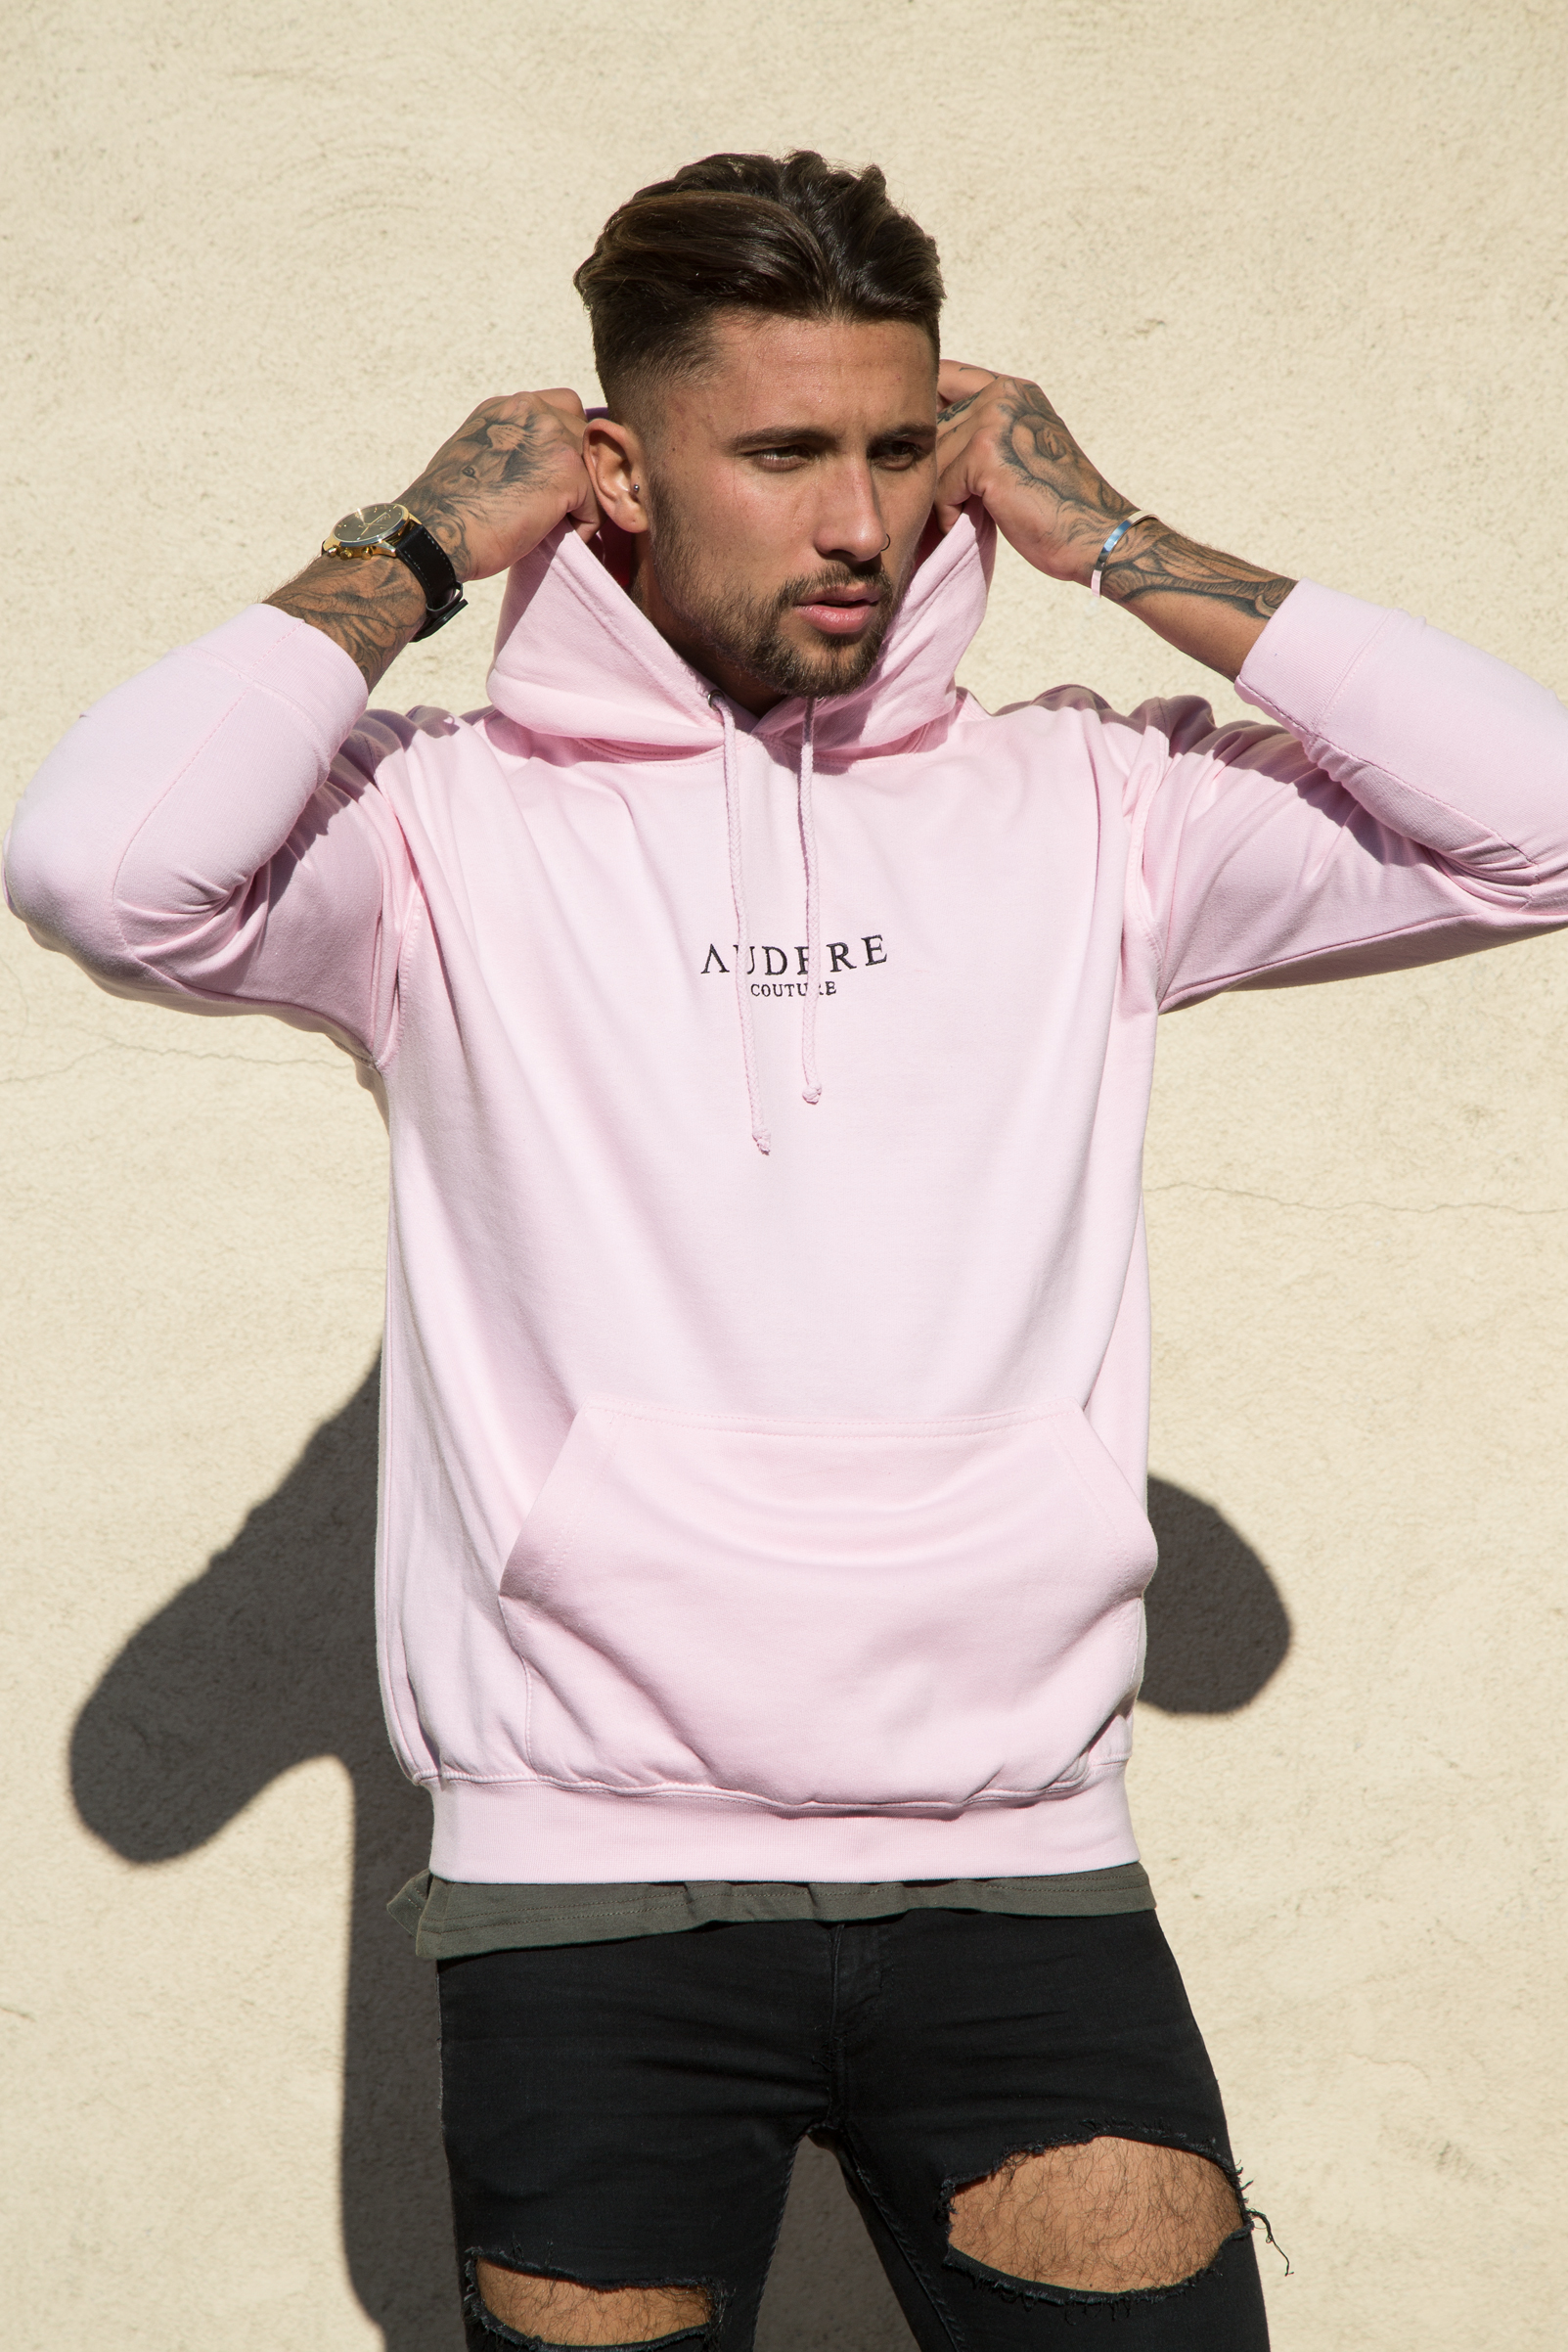 light pink hoodie mens